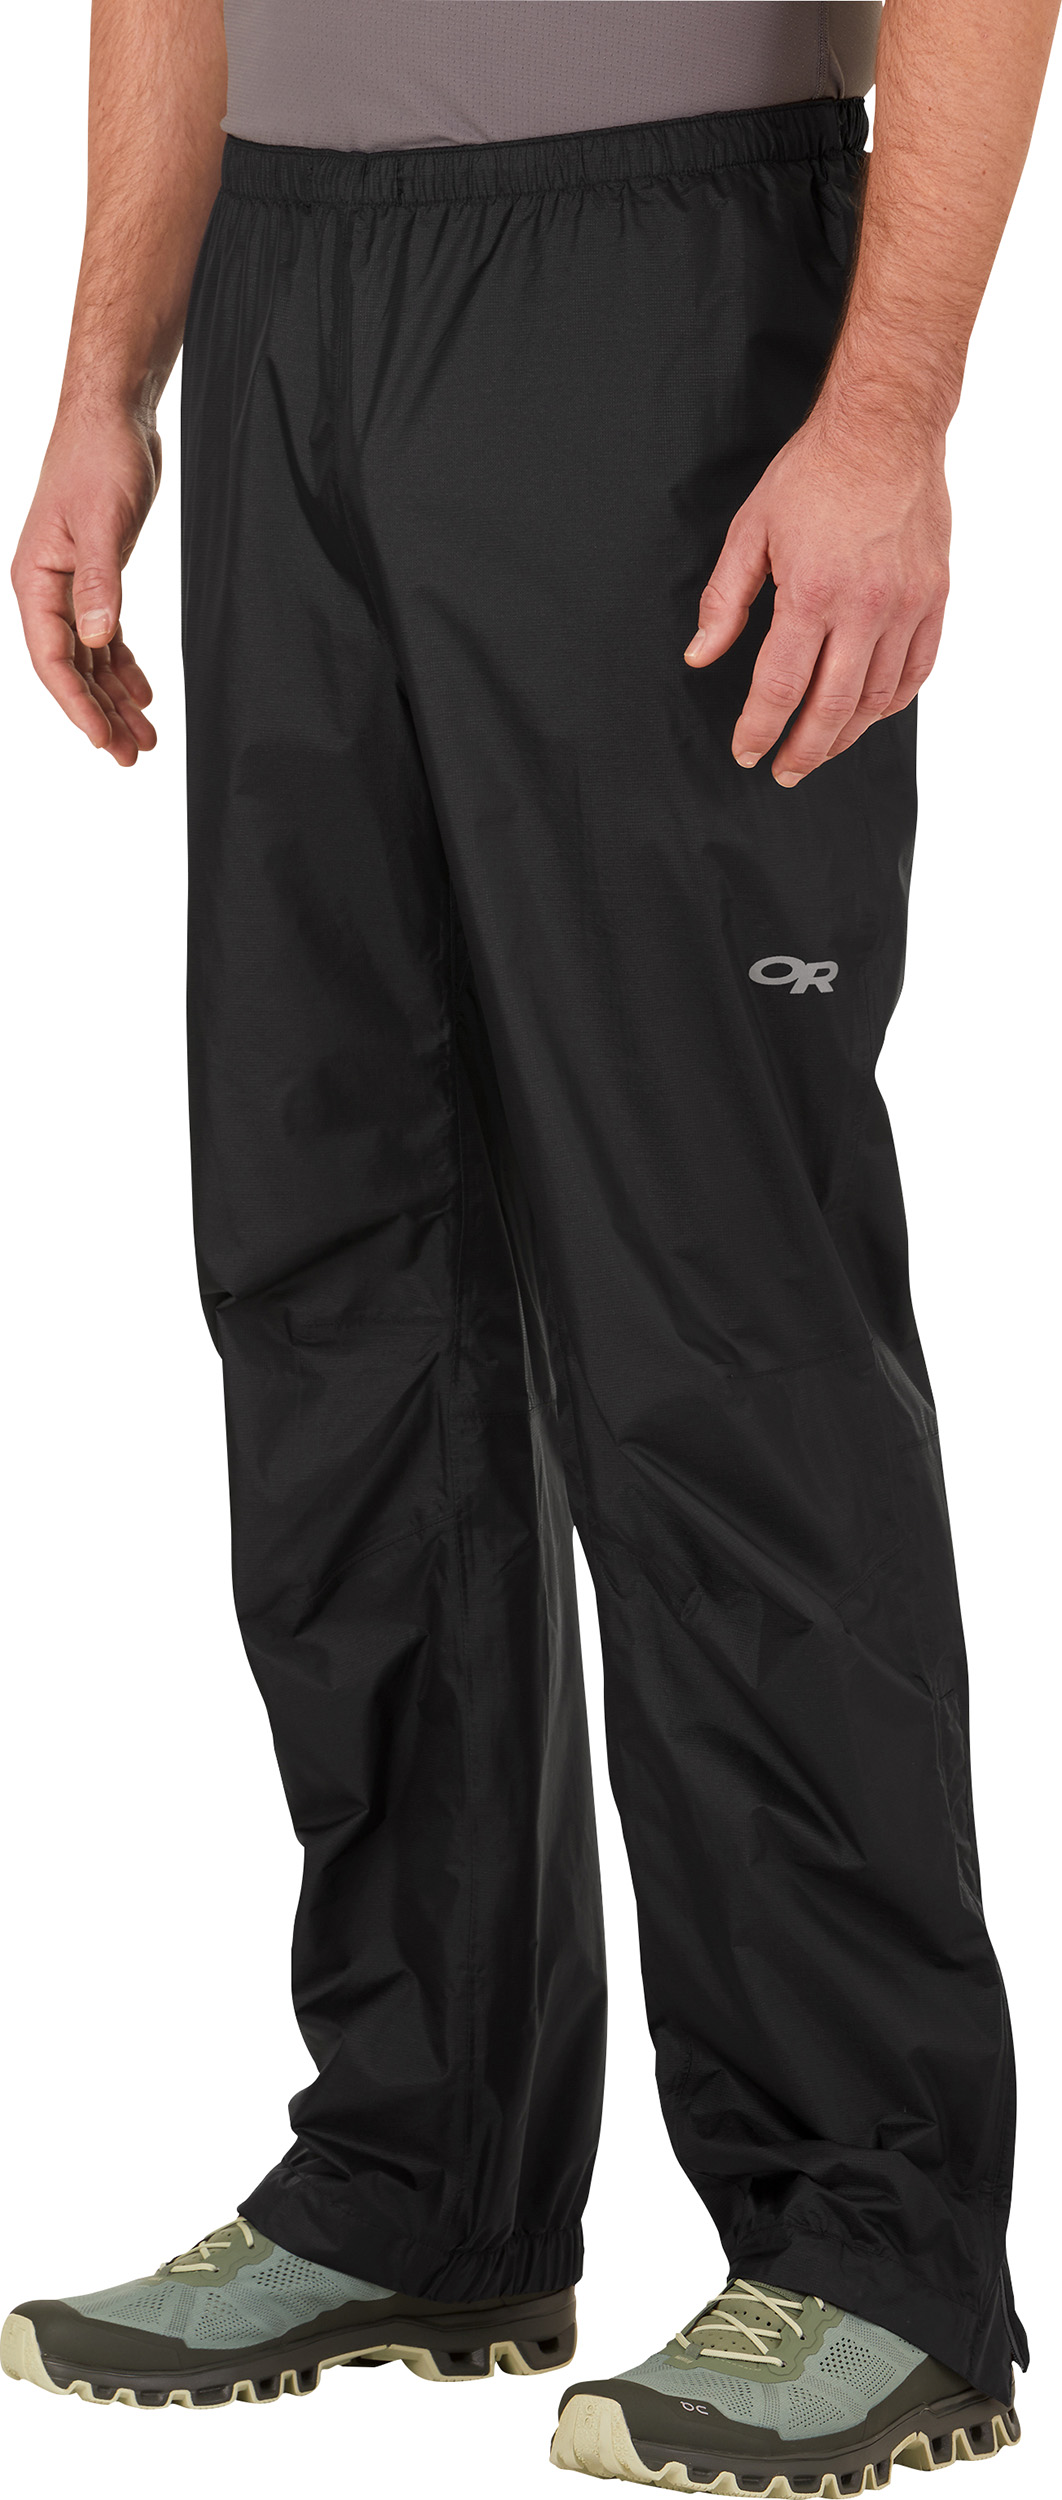 Buy Waterproof Pants Online | K2 Base Camp